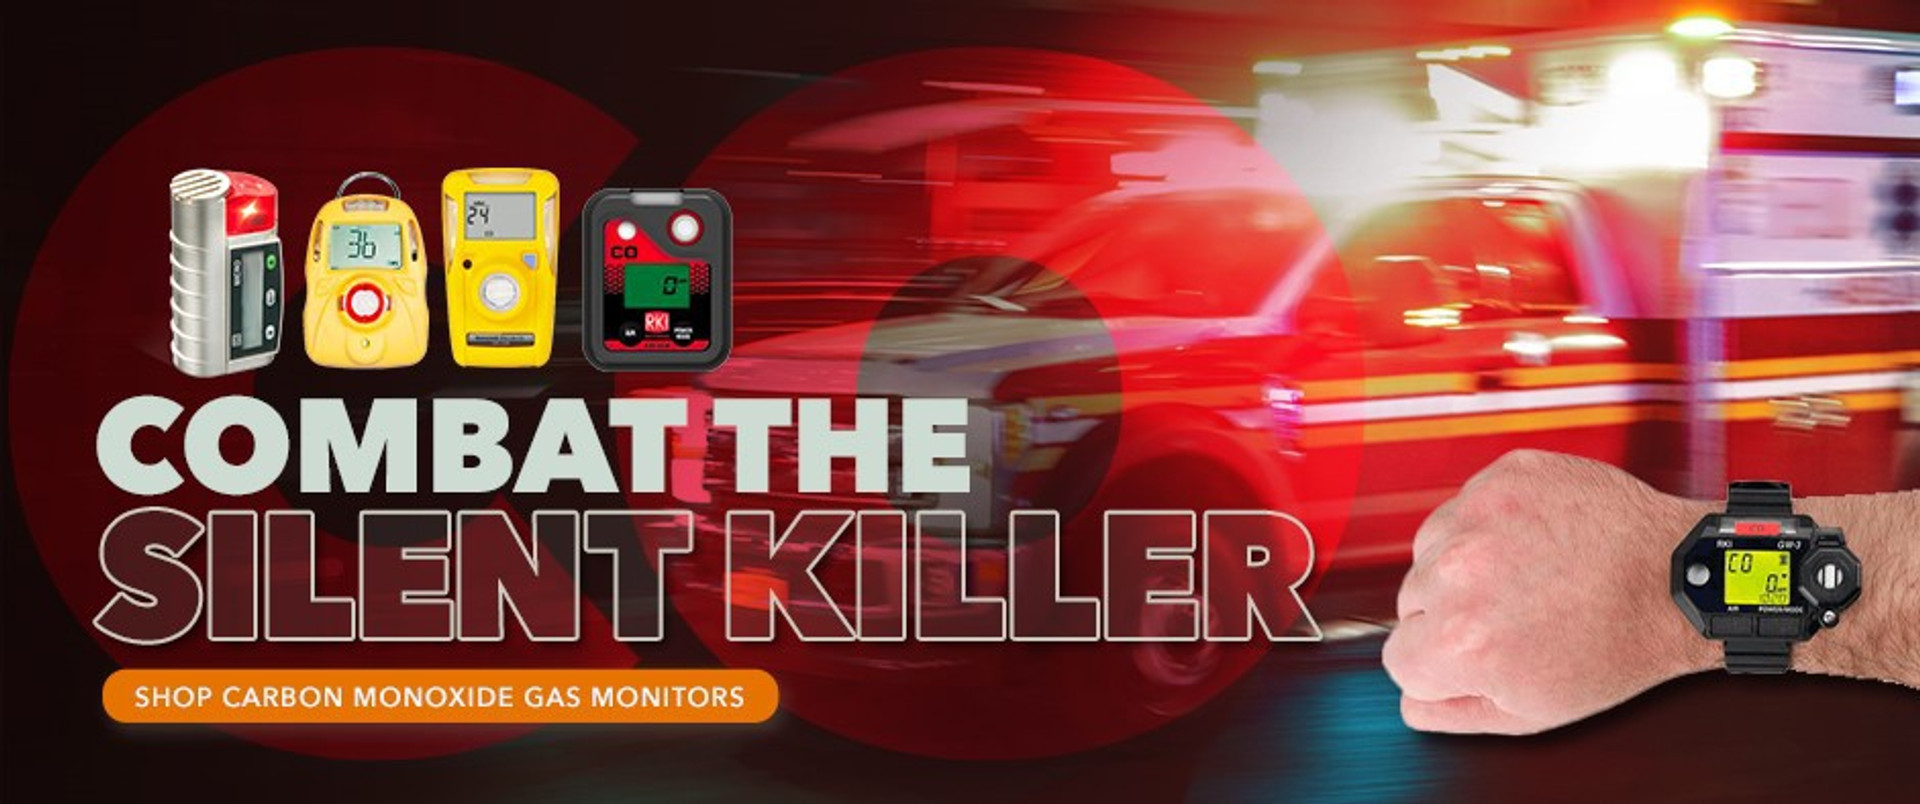 Combat the Silent Killer. Shop Carbon Monoxide Gas Monitors